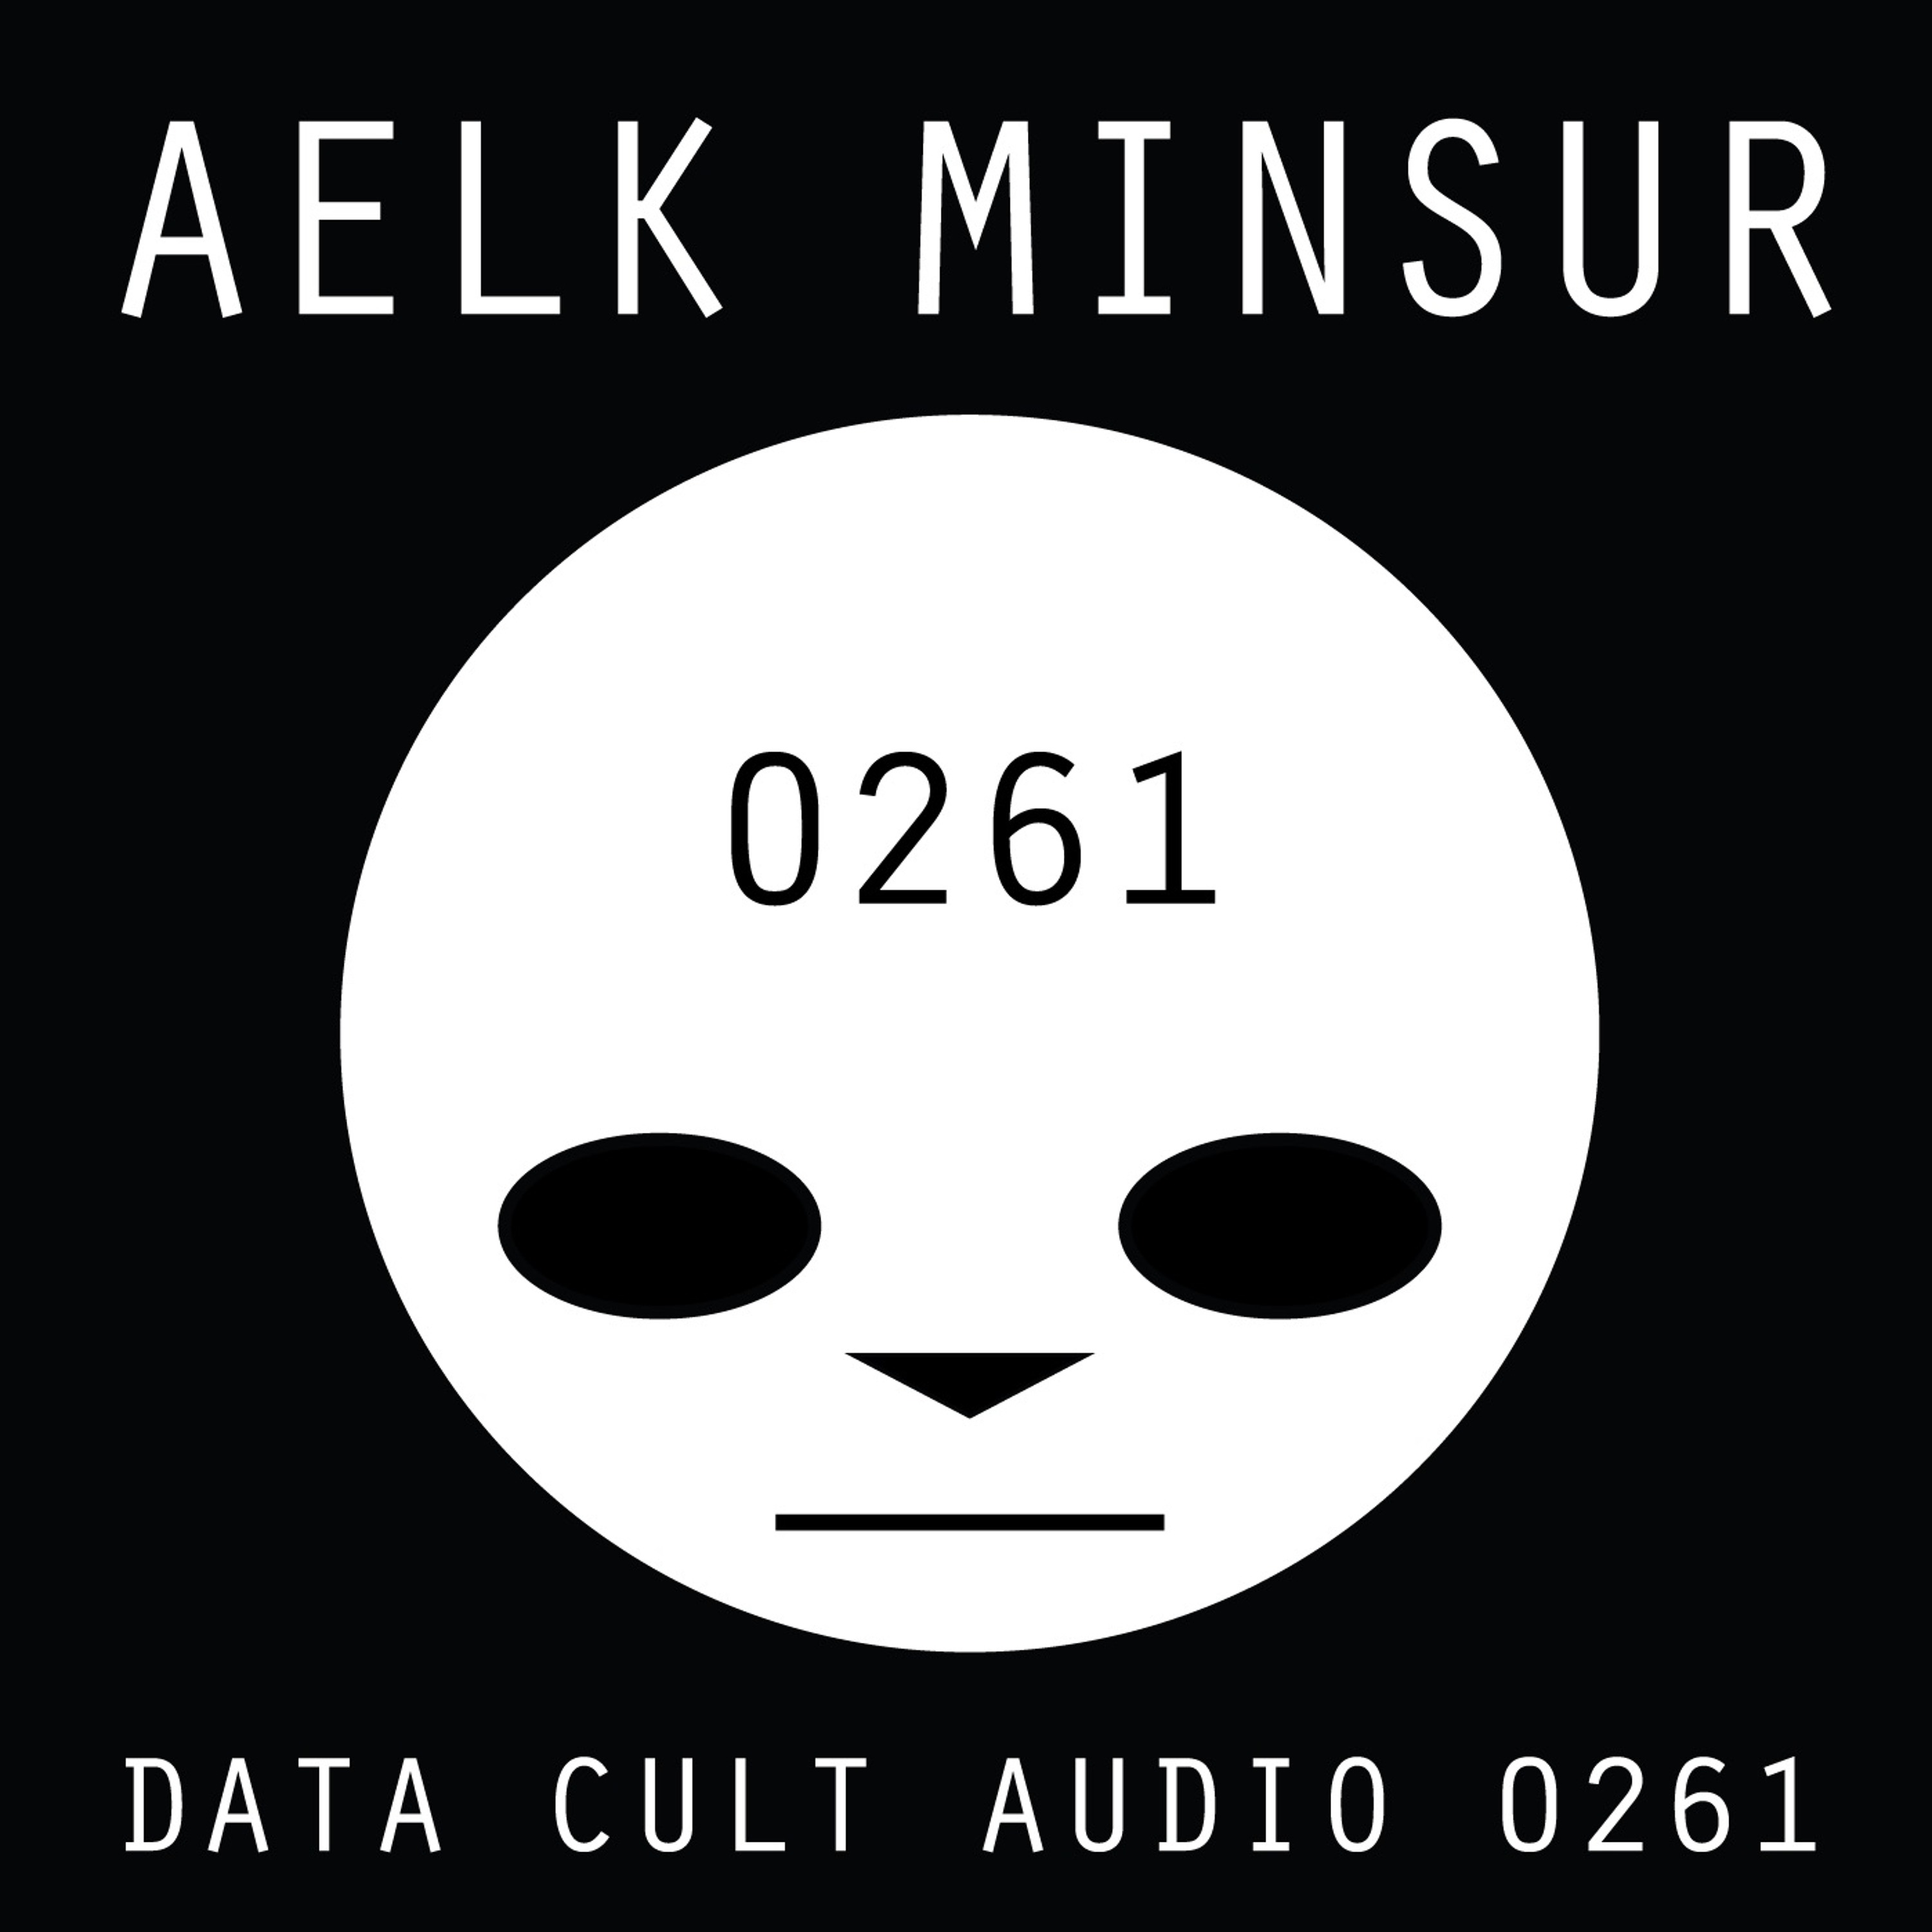 Data Cult Audio 0261 - Aelk Minsur